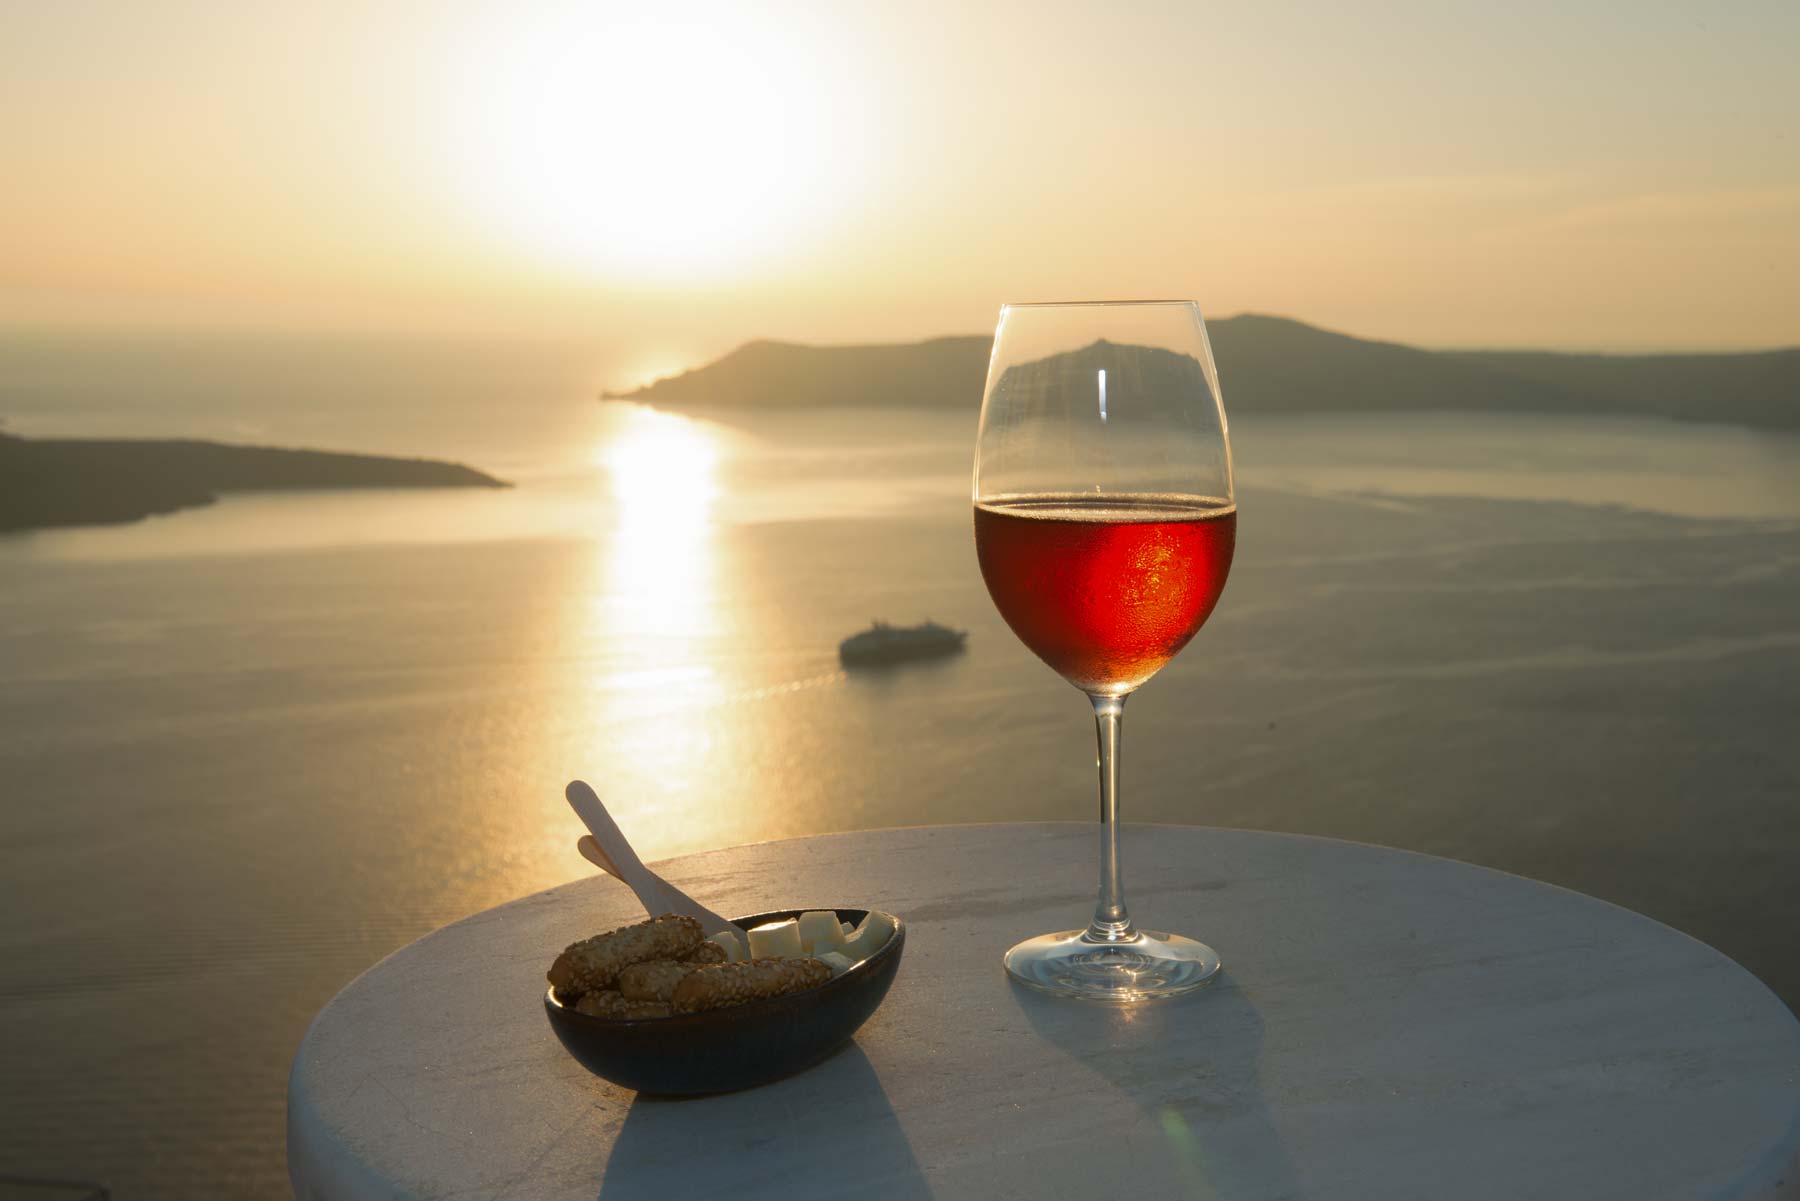 Ελληνικό νησί στα καλύτερα μέρη της Ευρώπης για όσους αγαπούν το κρασί